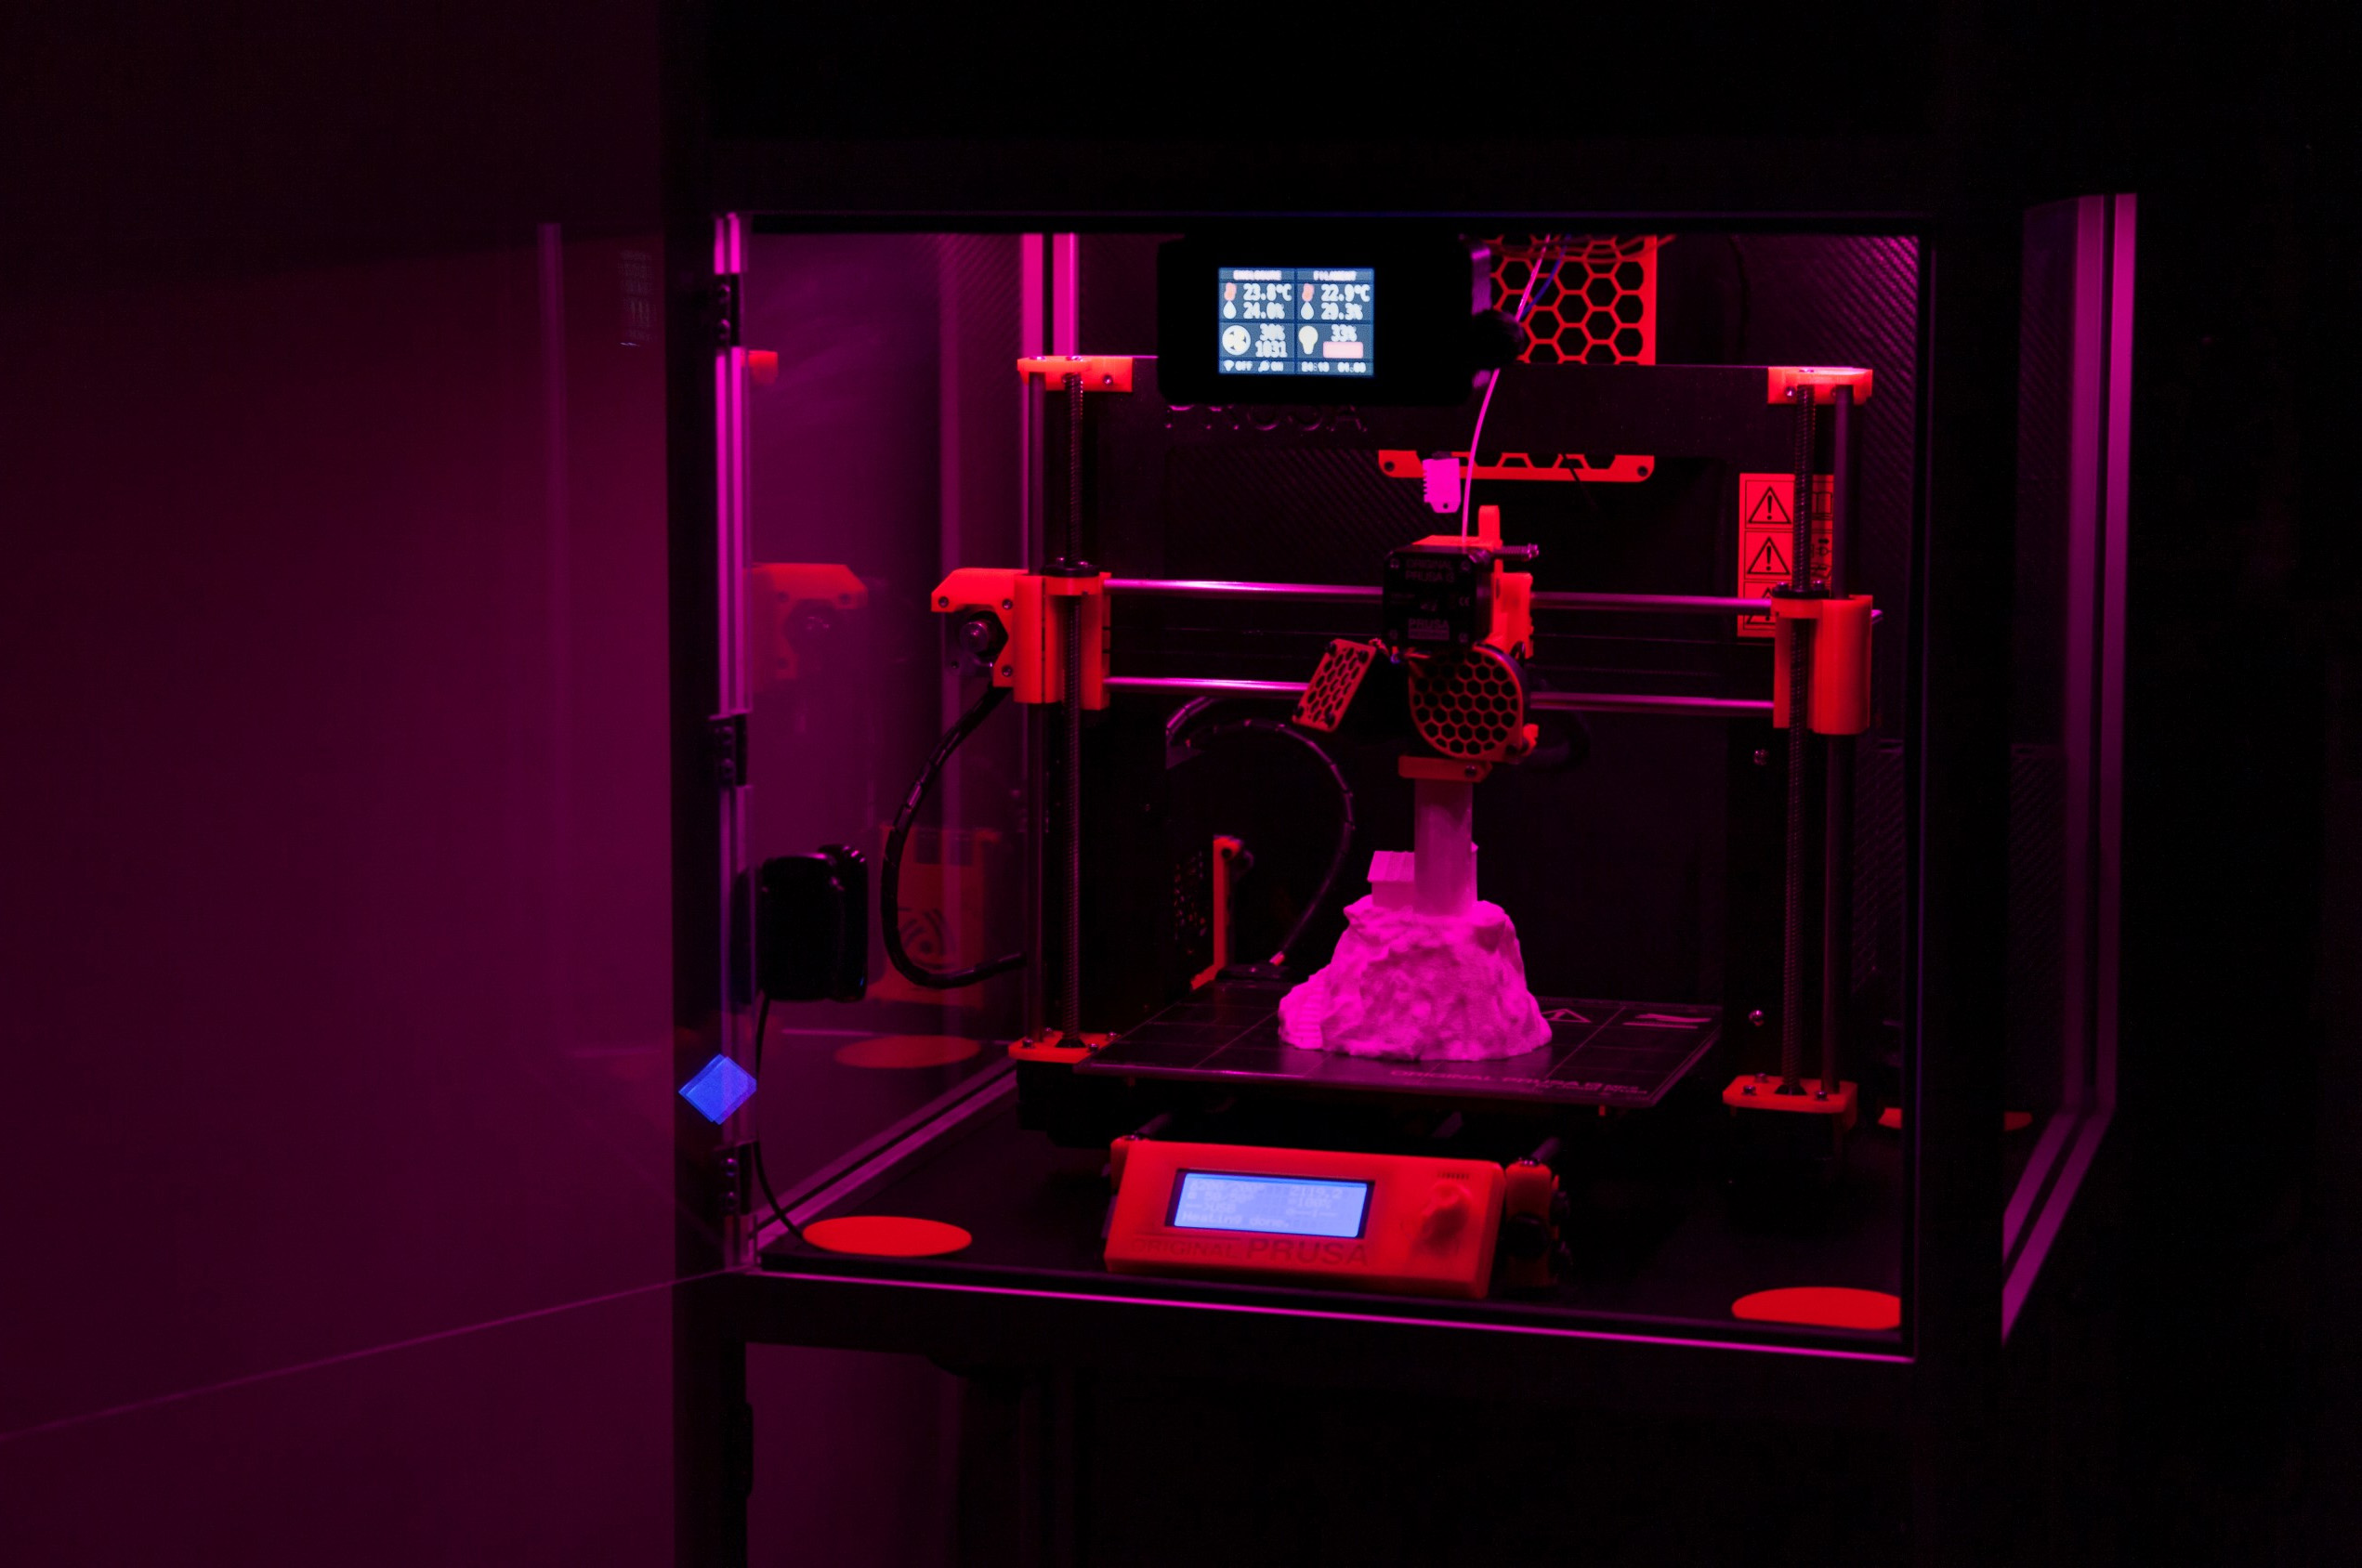 3D printer enclosure